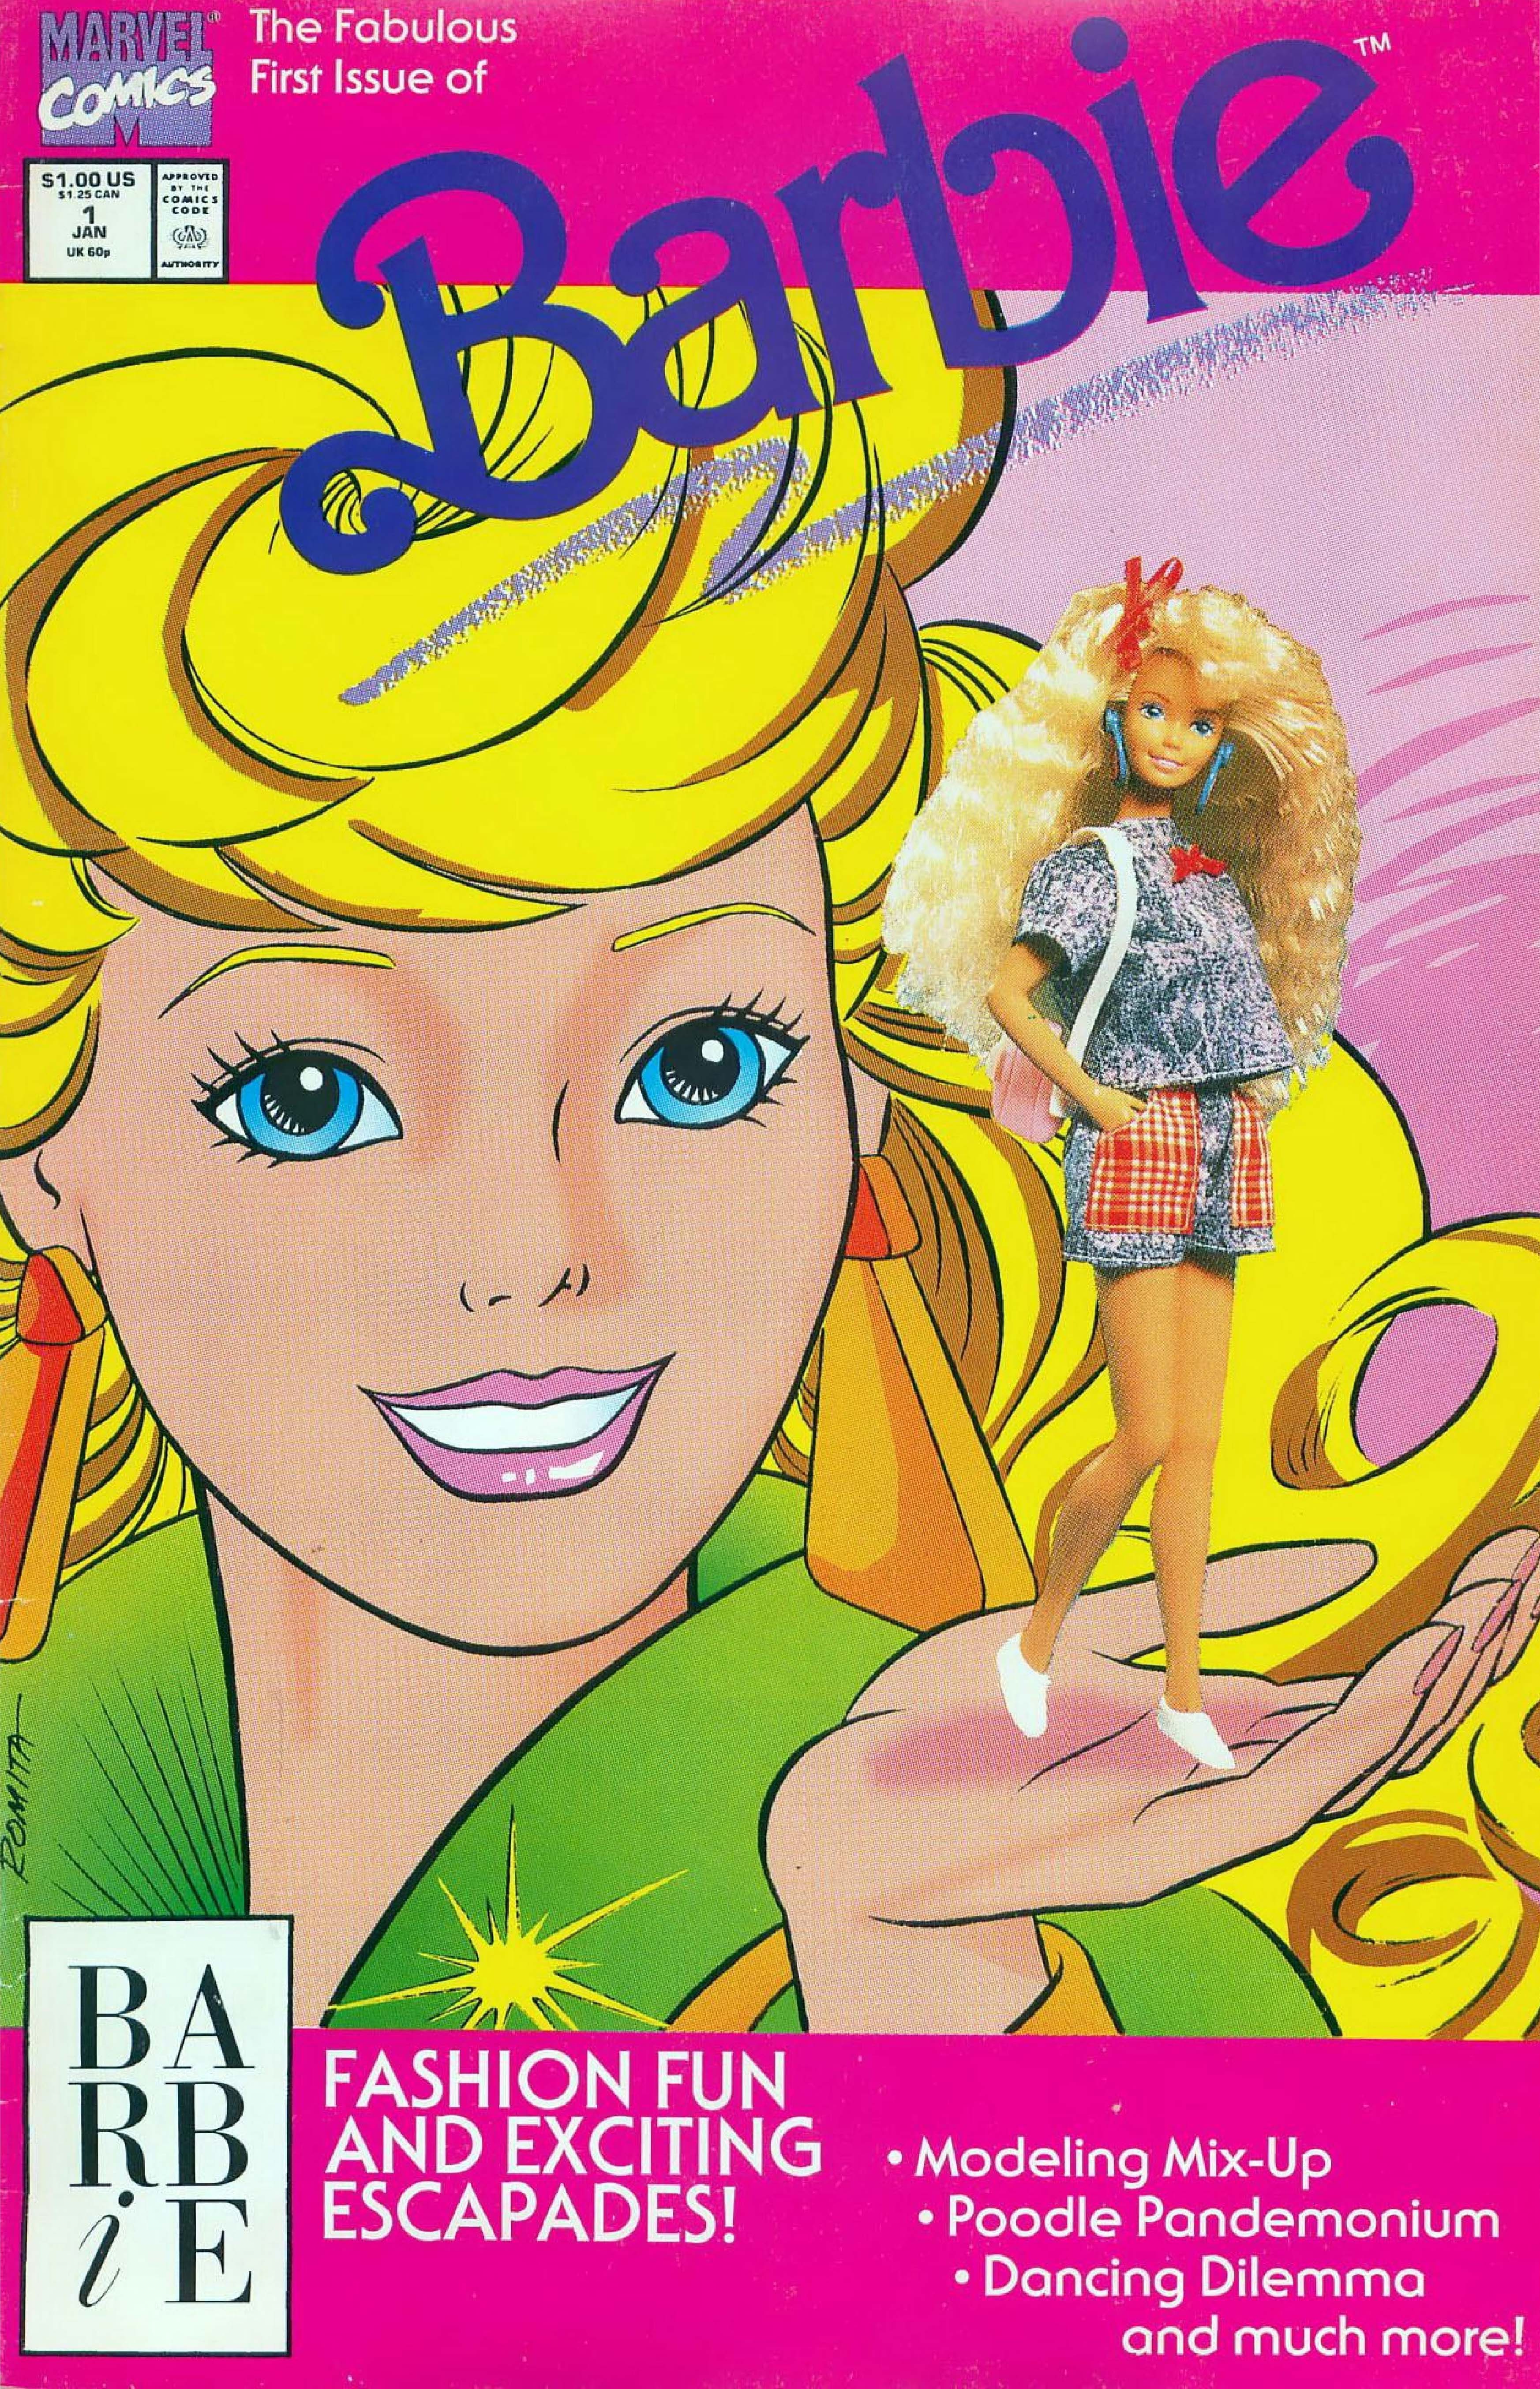 La copertina di Barbie #1.